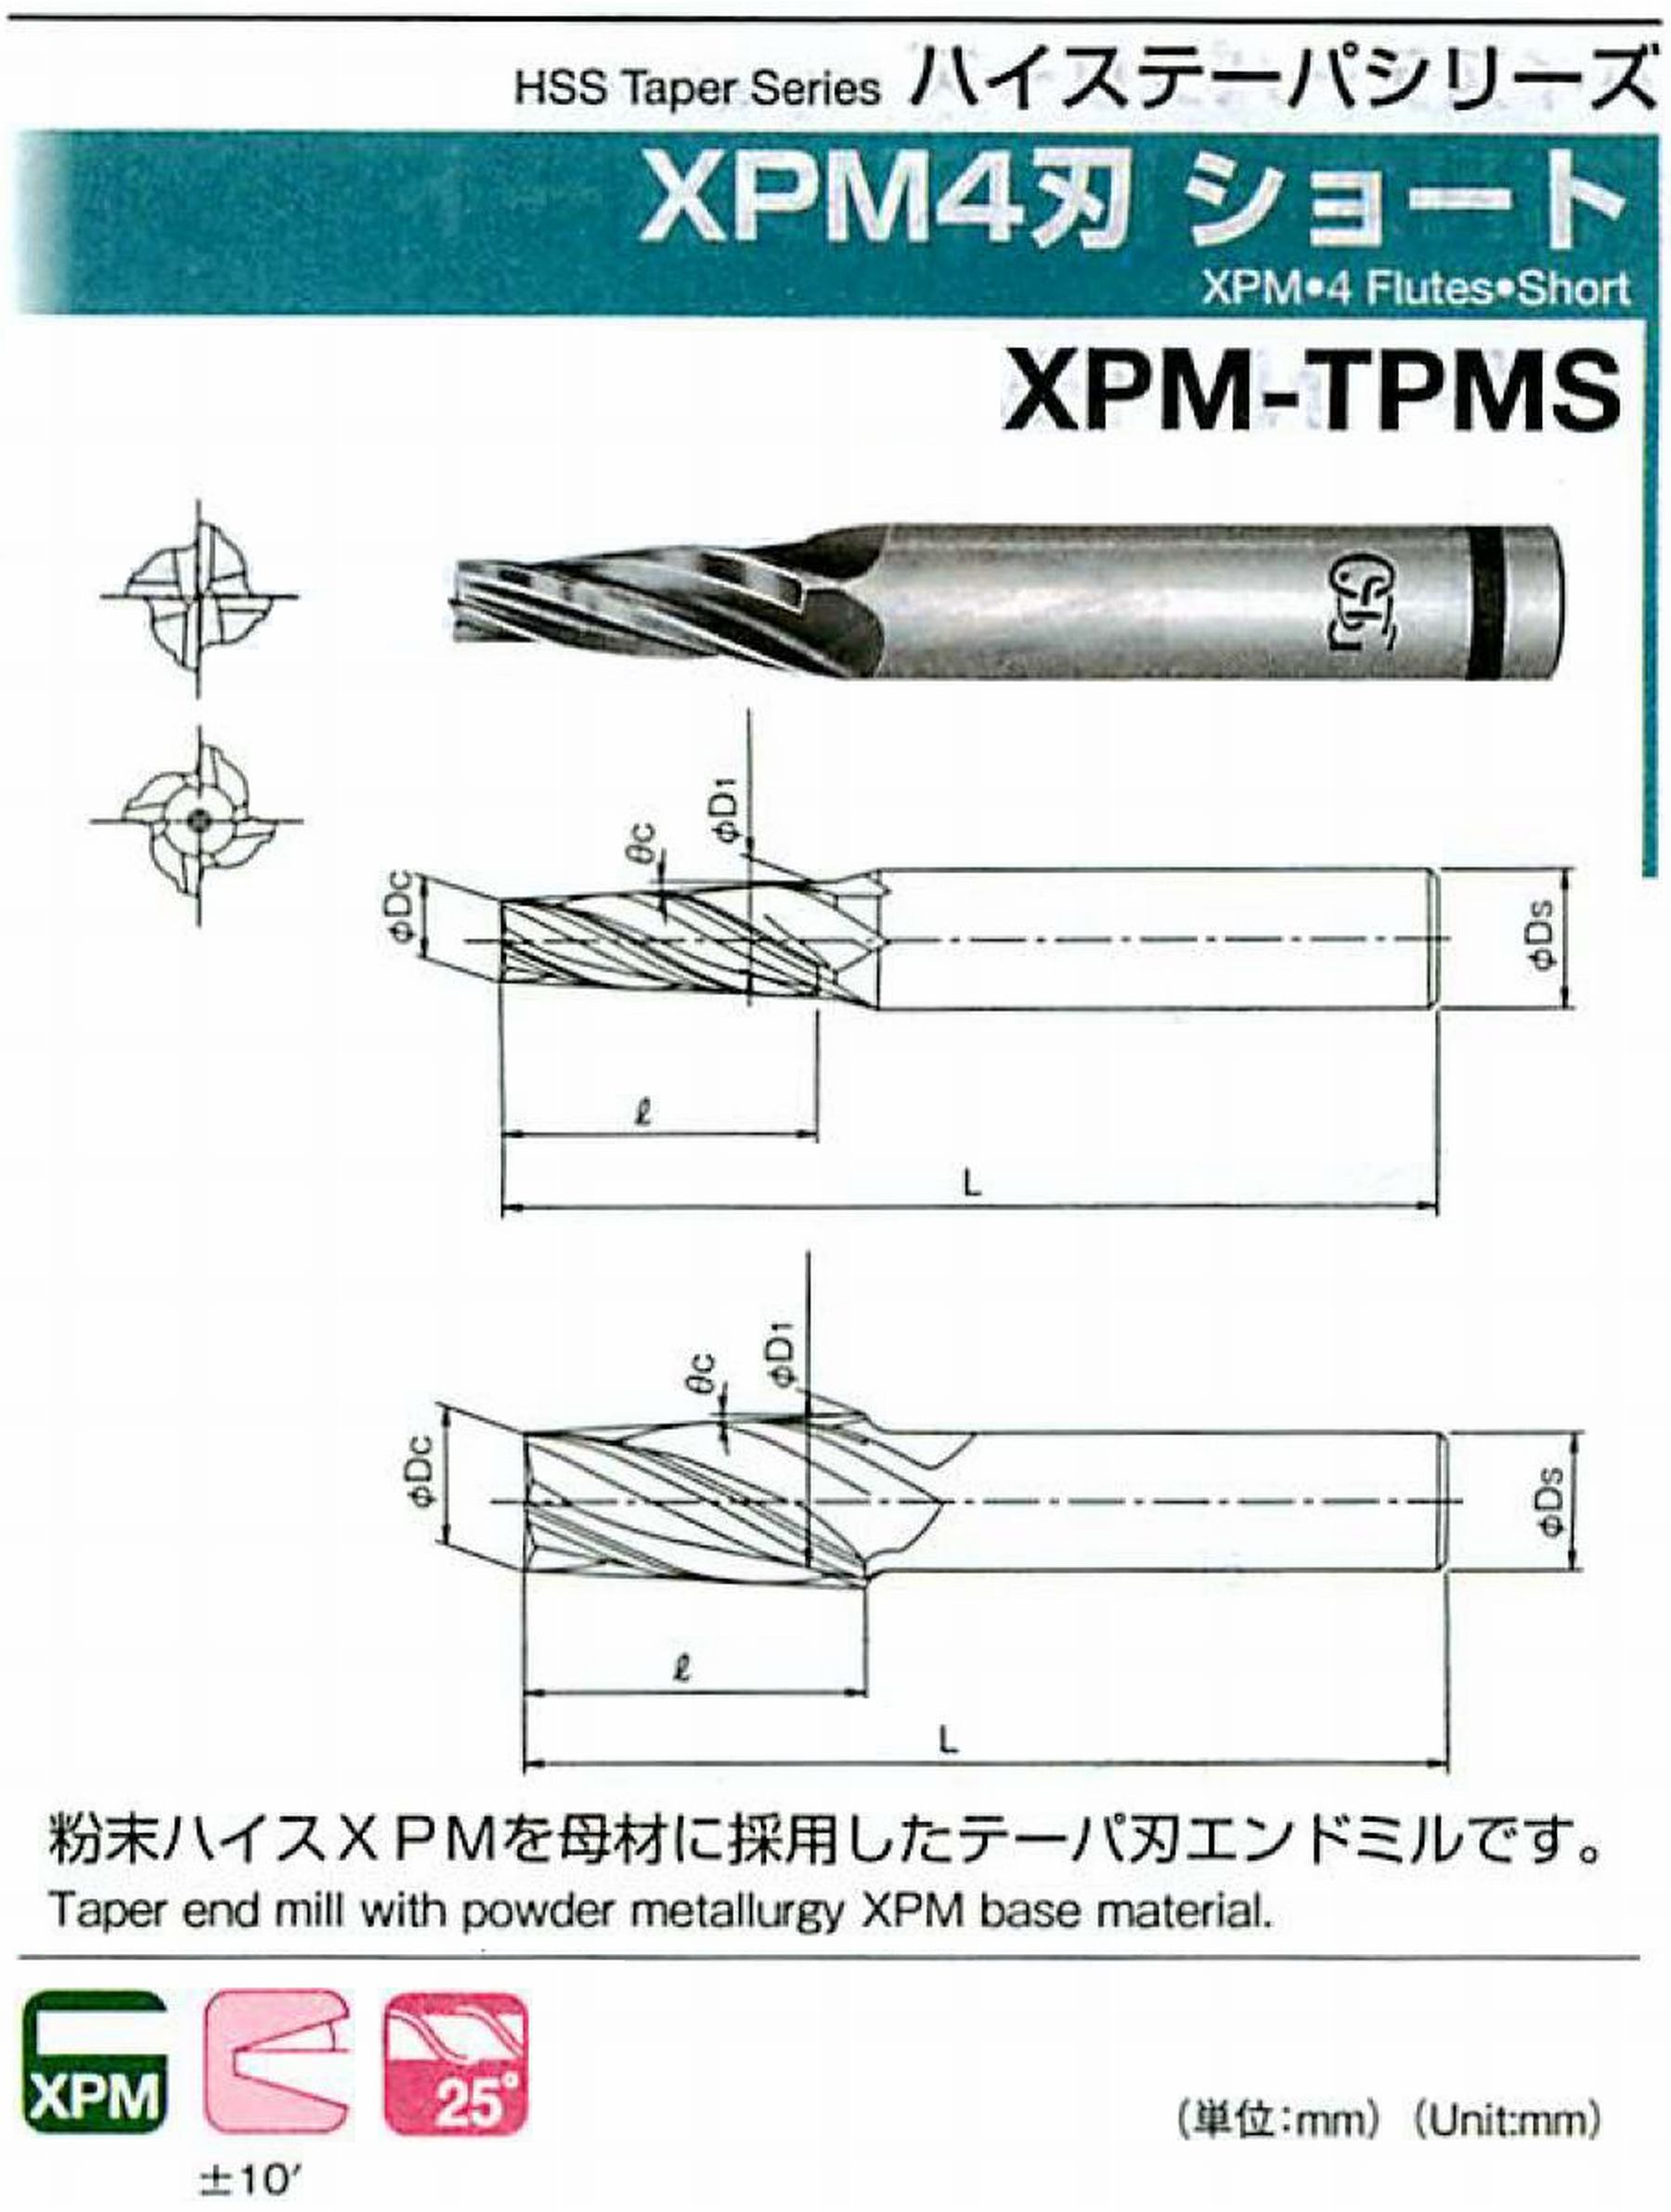 オーエスジー/OSG XPM4刃 ショート XPM-TPMS 外径×刃部テーパ半角6×5°全長82 刃長25 シャンク径12mm 大端径10.37